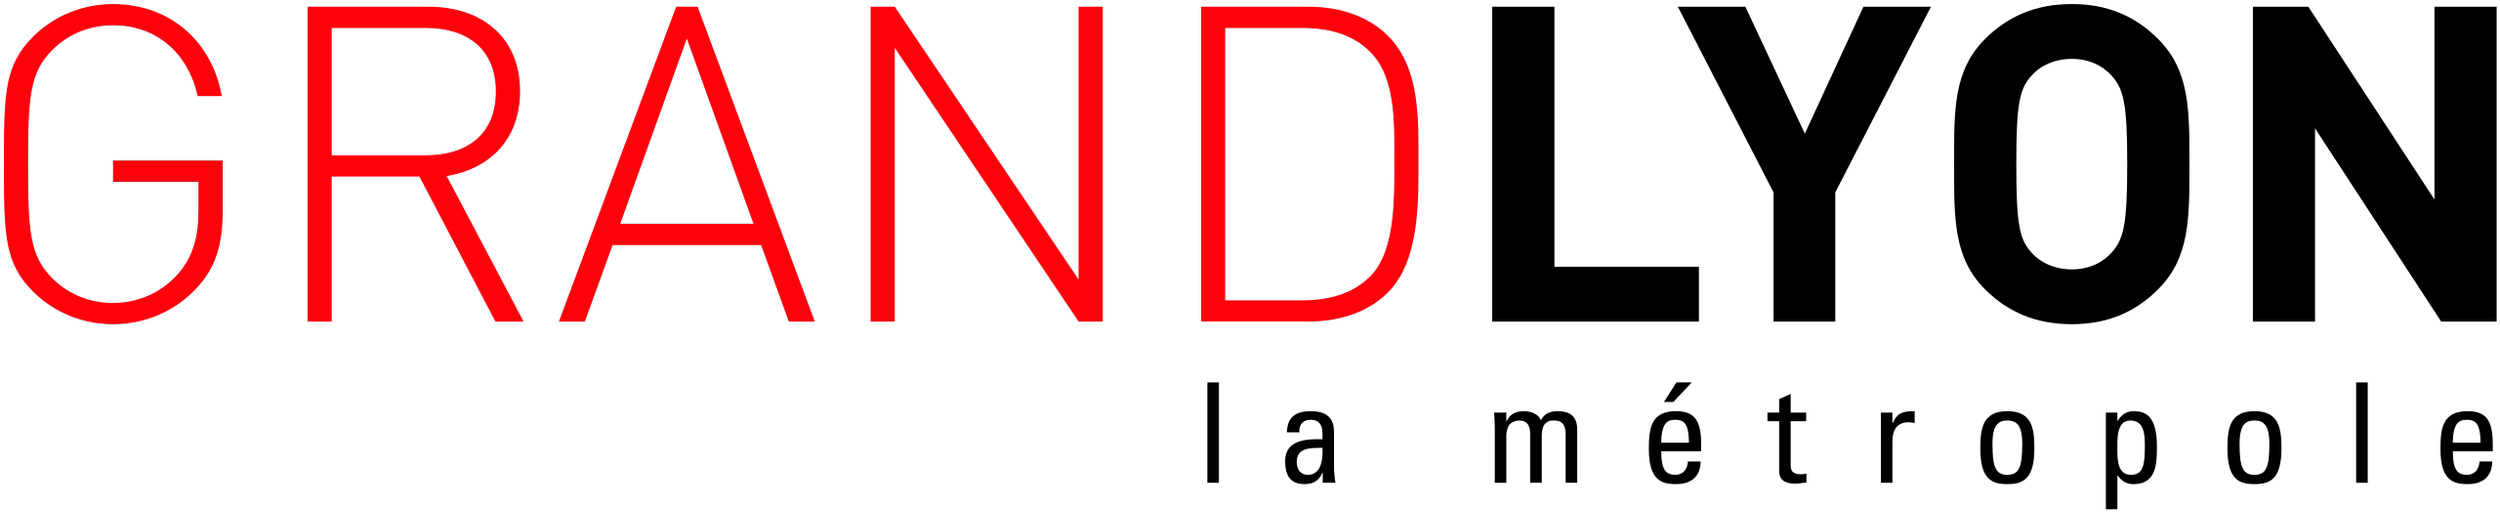 Web_Logo_Grand_Lyon.png